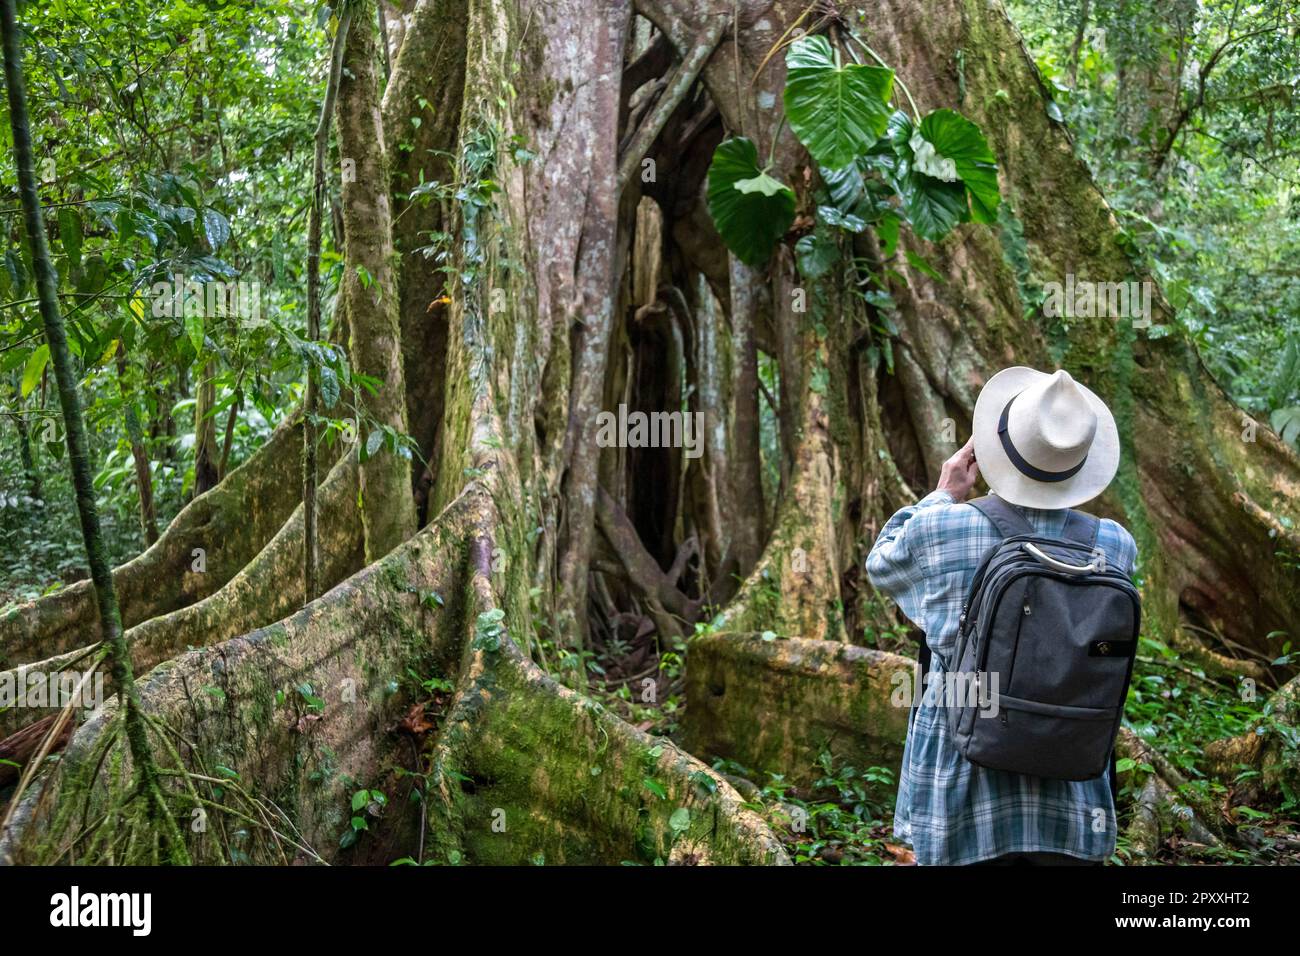 Muelle San Carlos, Costa Rica - Ein Tourist Fotografiert einen Ficusbaum im Regenwald Costa Ricas. Stockfoto